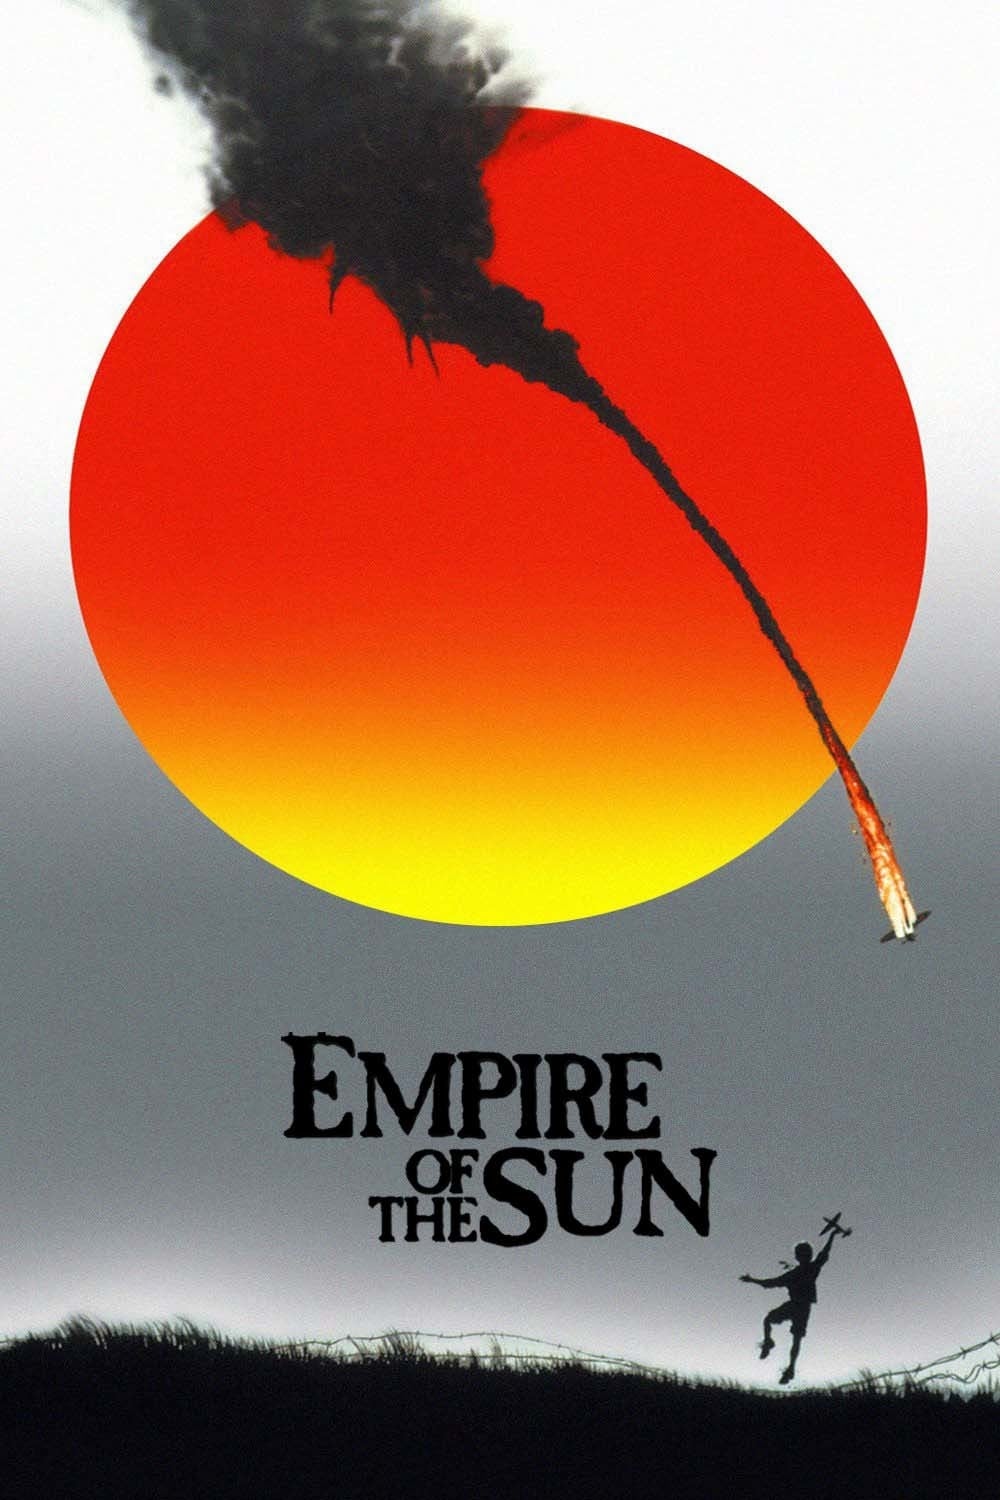 ดูหนังออนไลน์ฟรี Empire of the Sun 1987 น้ำตาสีเลือด